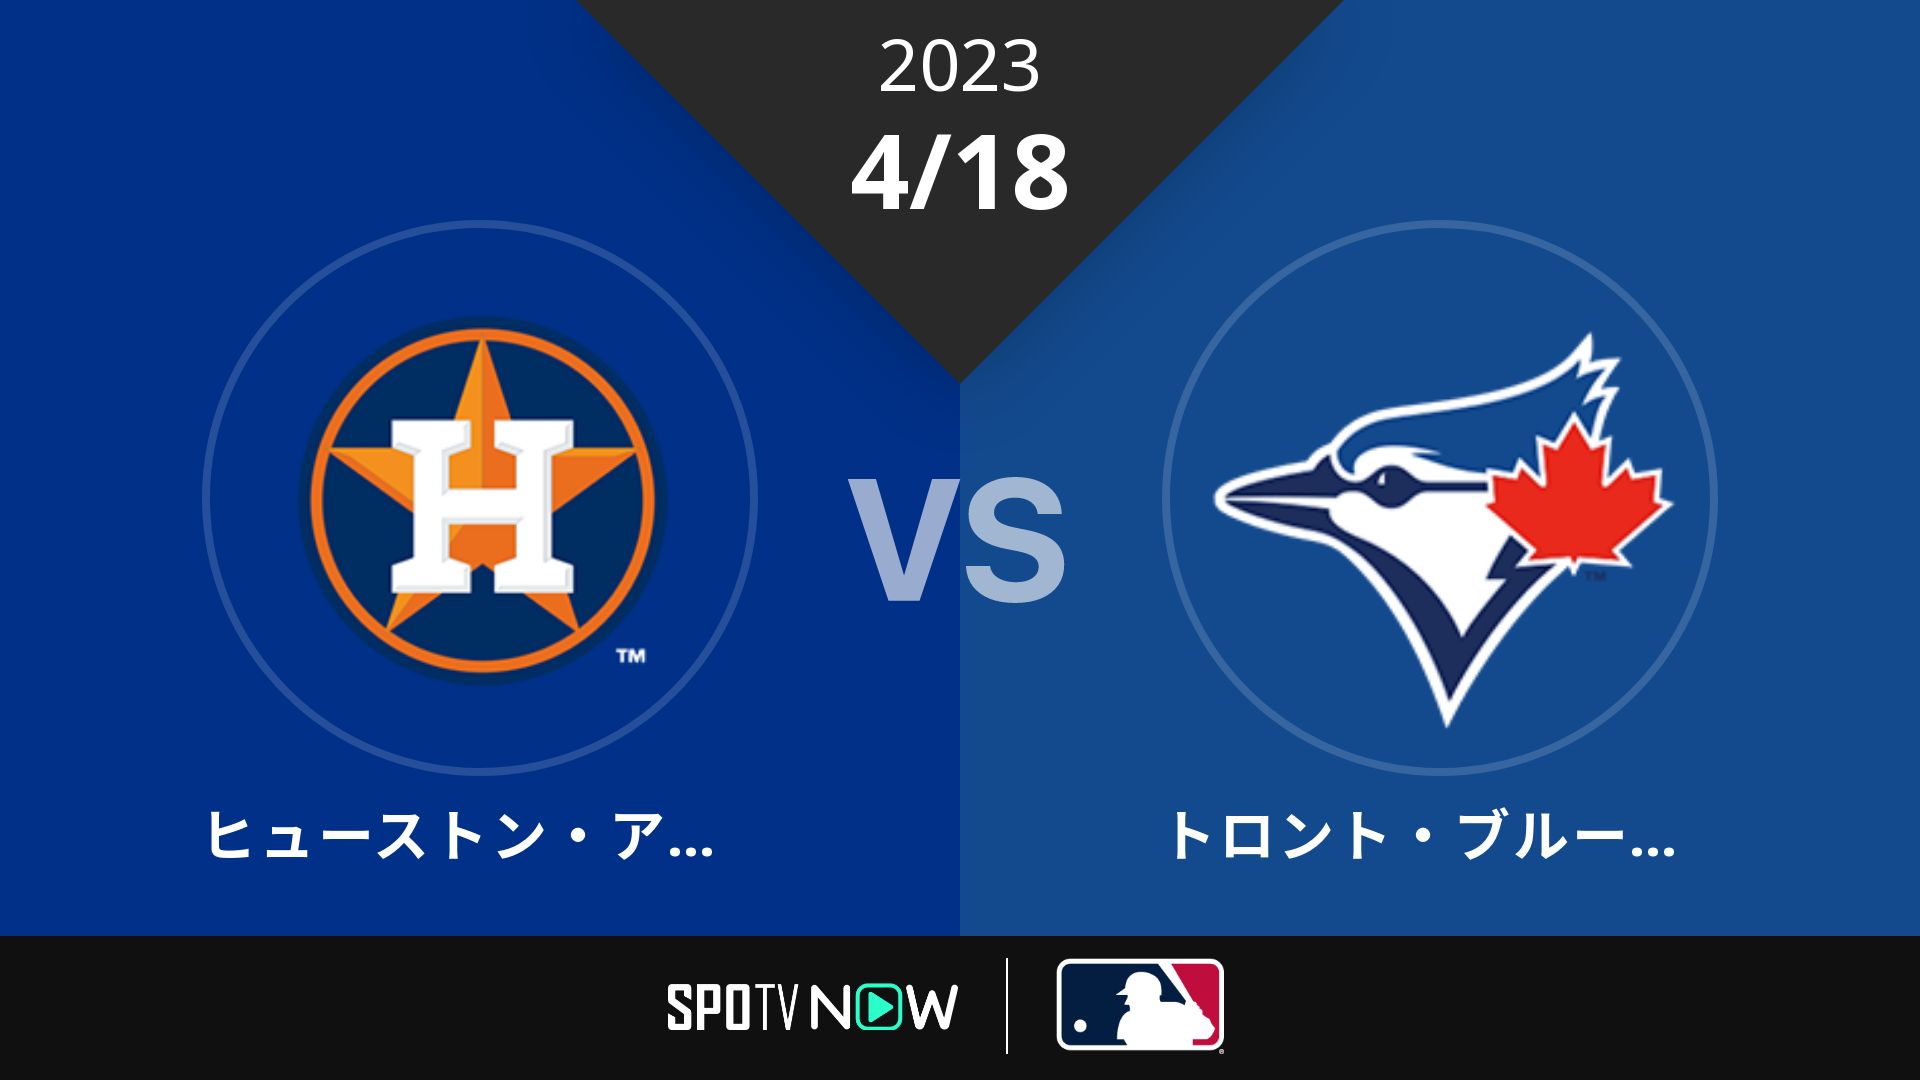 2023/4/18 アストロズ vs ブルージェイズ [MLB]